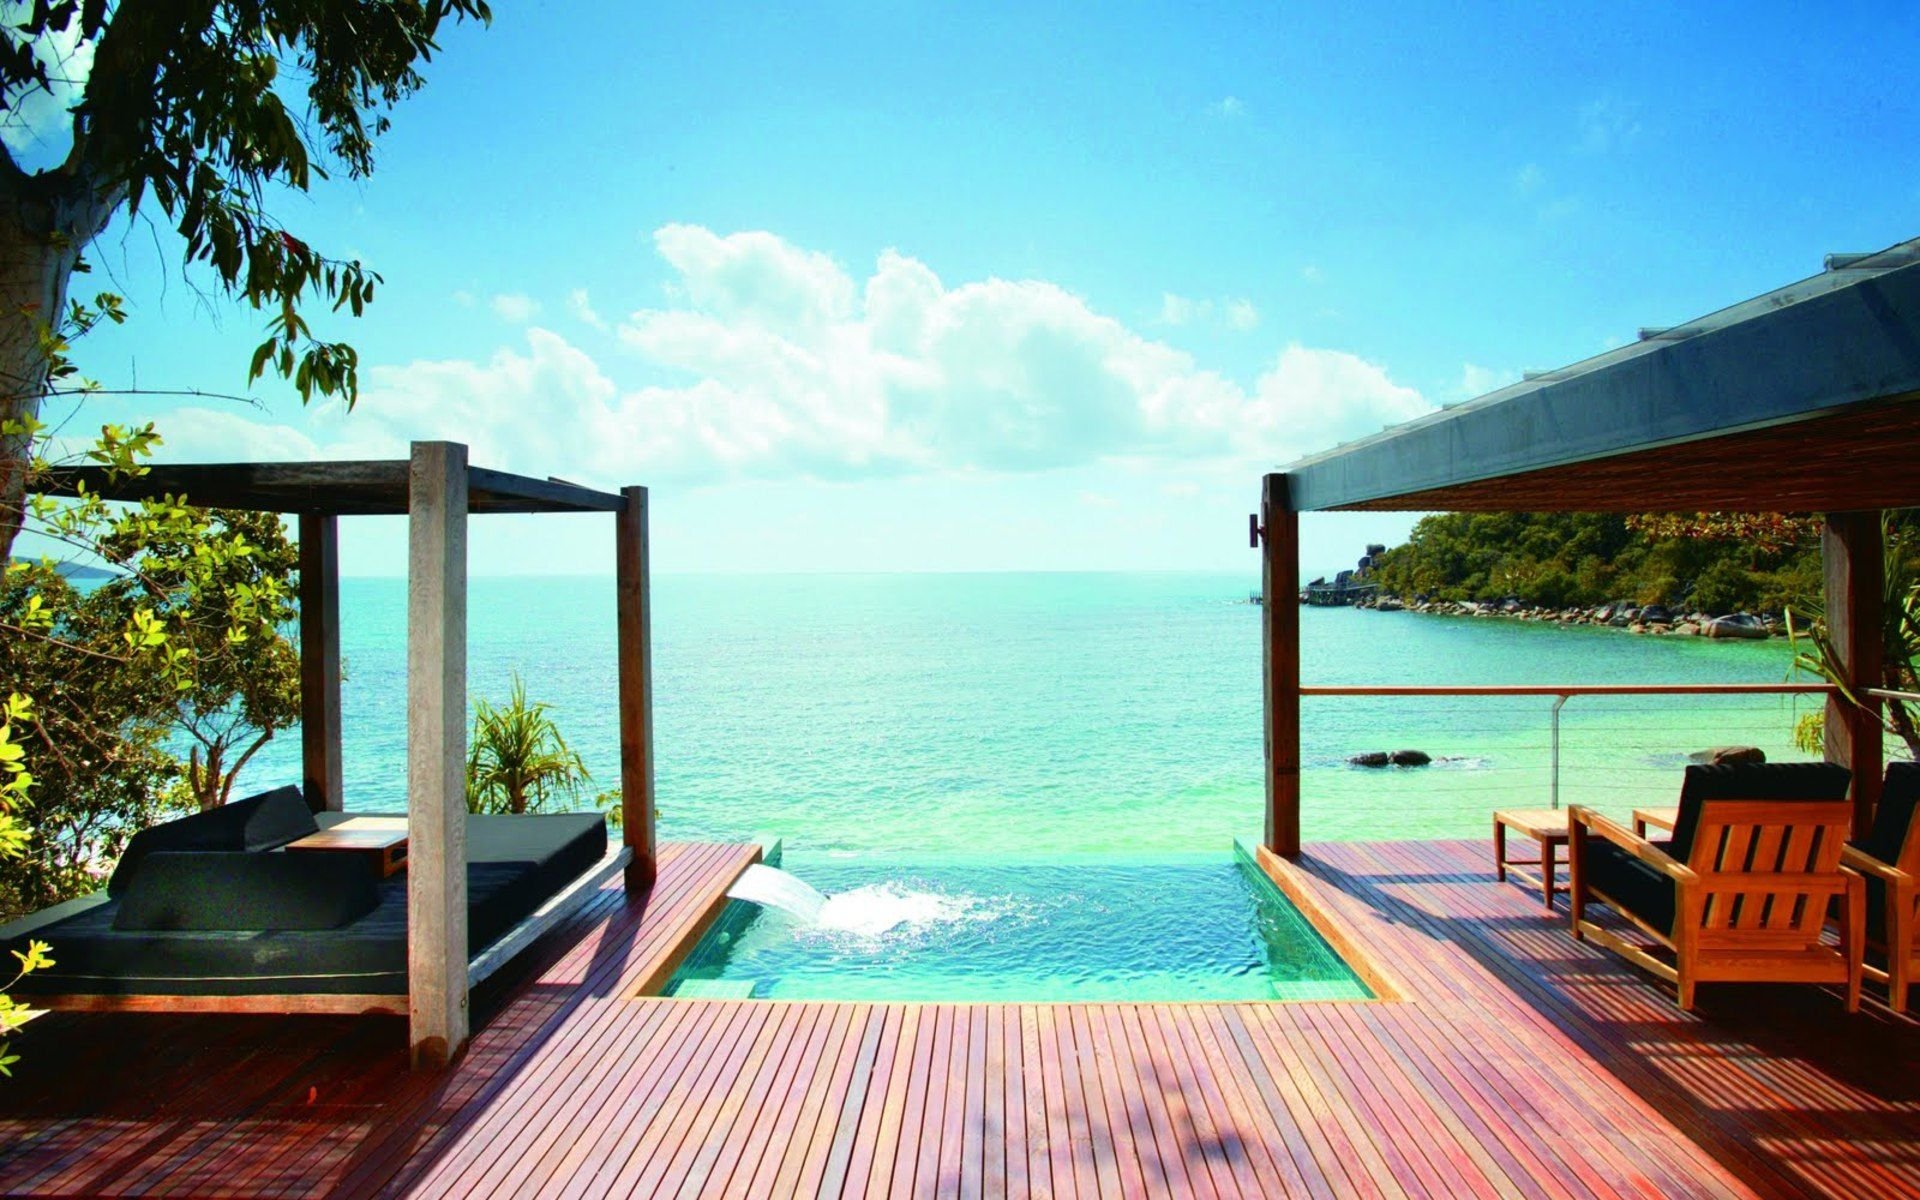 Домик с видом на море. Bedarra Island Resort 5*Австралия. Терраса в Шри-Ланка. Вид на океан с террасы. Терраса на берегу моря.